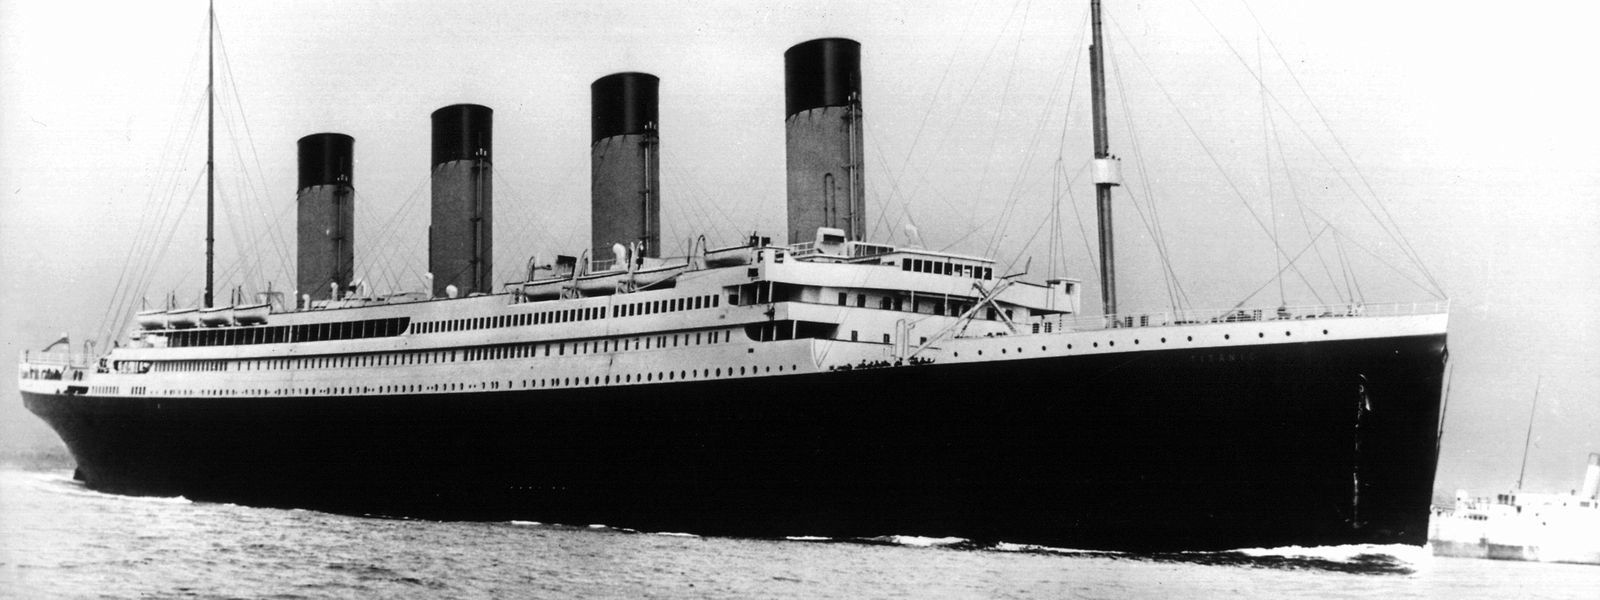 Am 14. April 1912, nur vier Tage nach dem die Titanic in See stach, kollidierte das Schiff mit einem Eisberg, der sein Schicksal besiegelte.